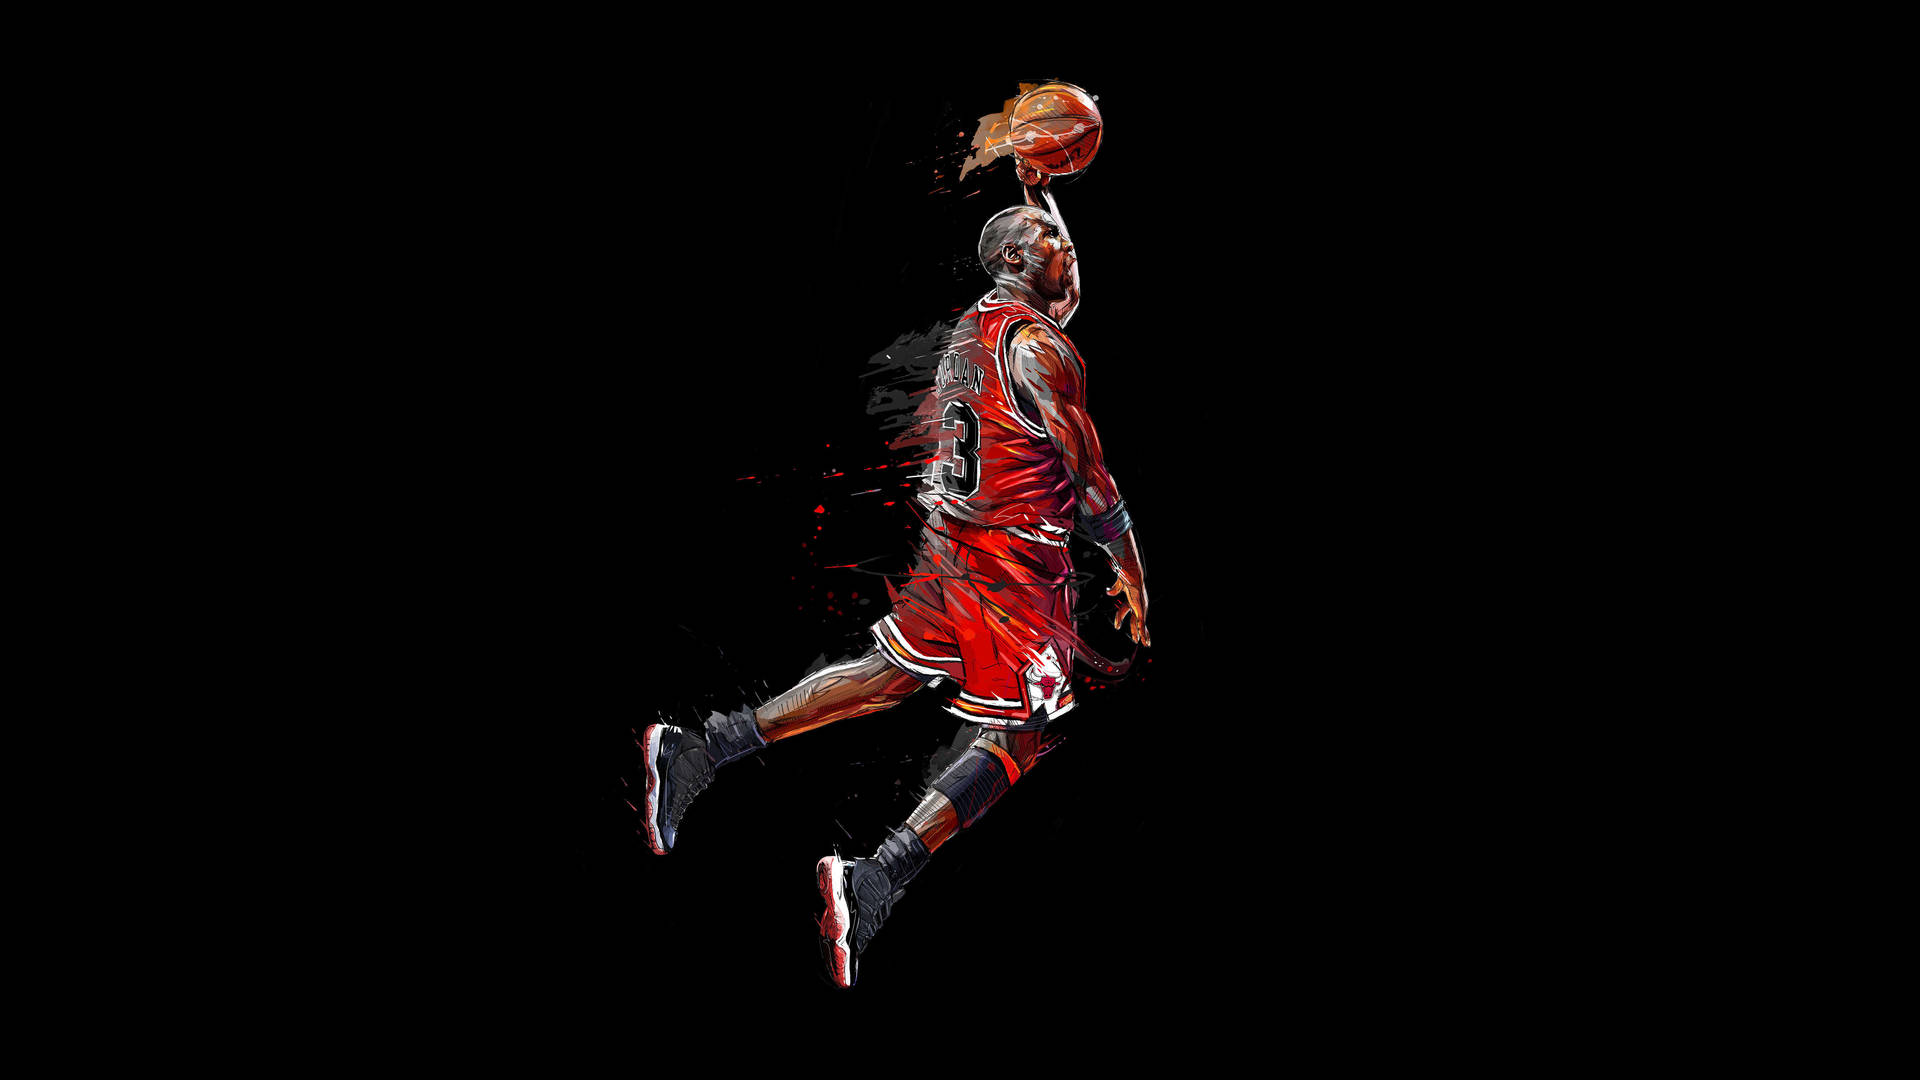 Cover Image With Michael Jordan Hd Wallpaper